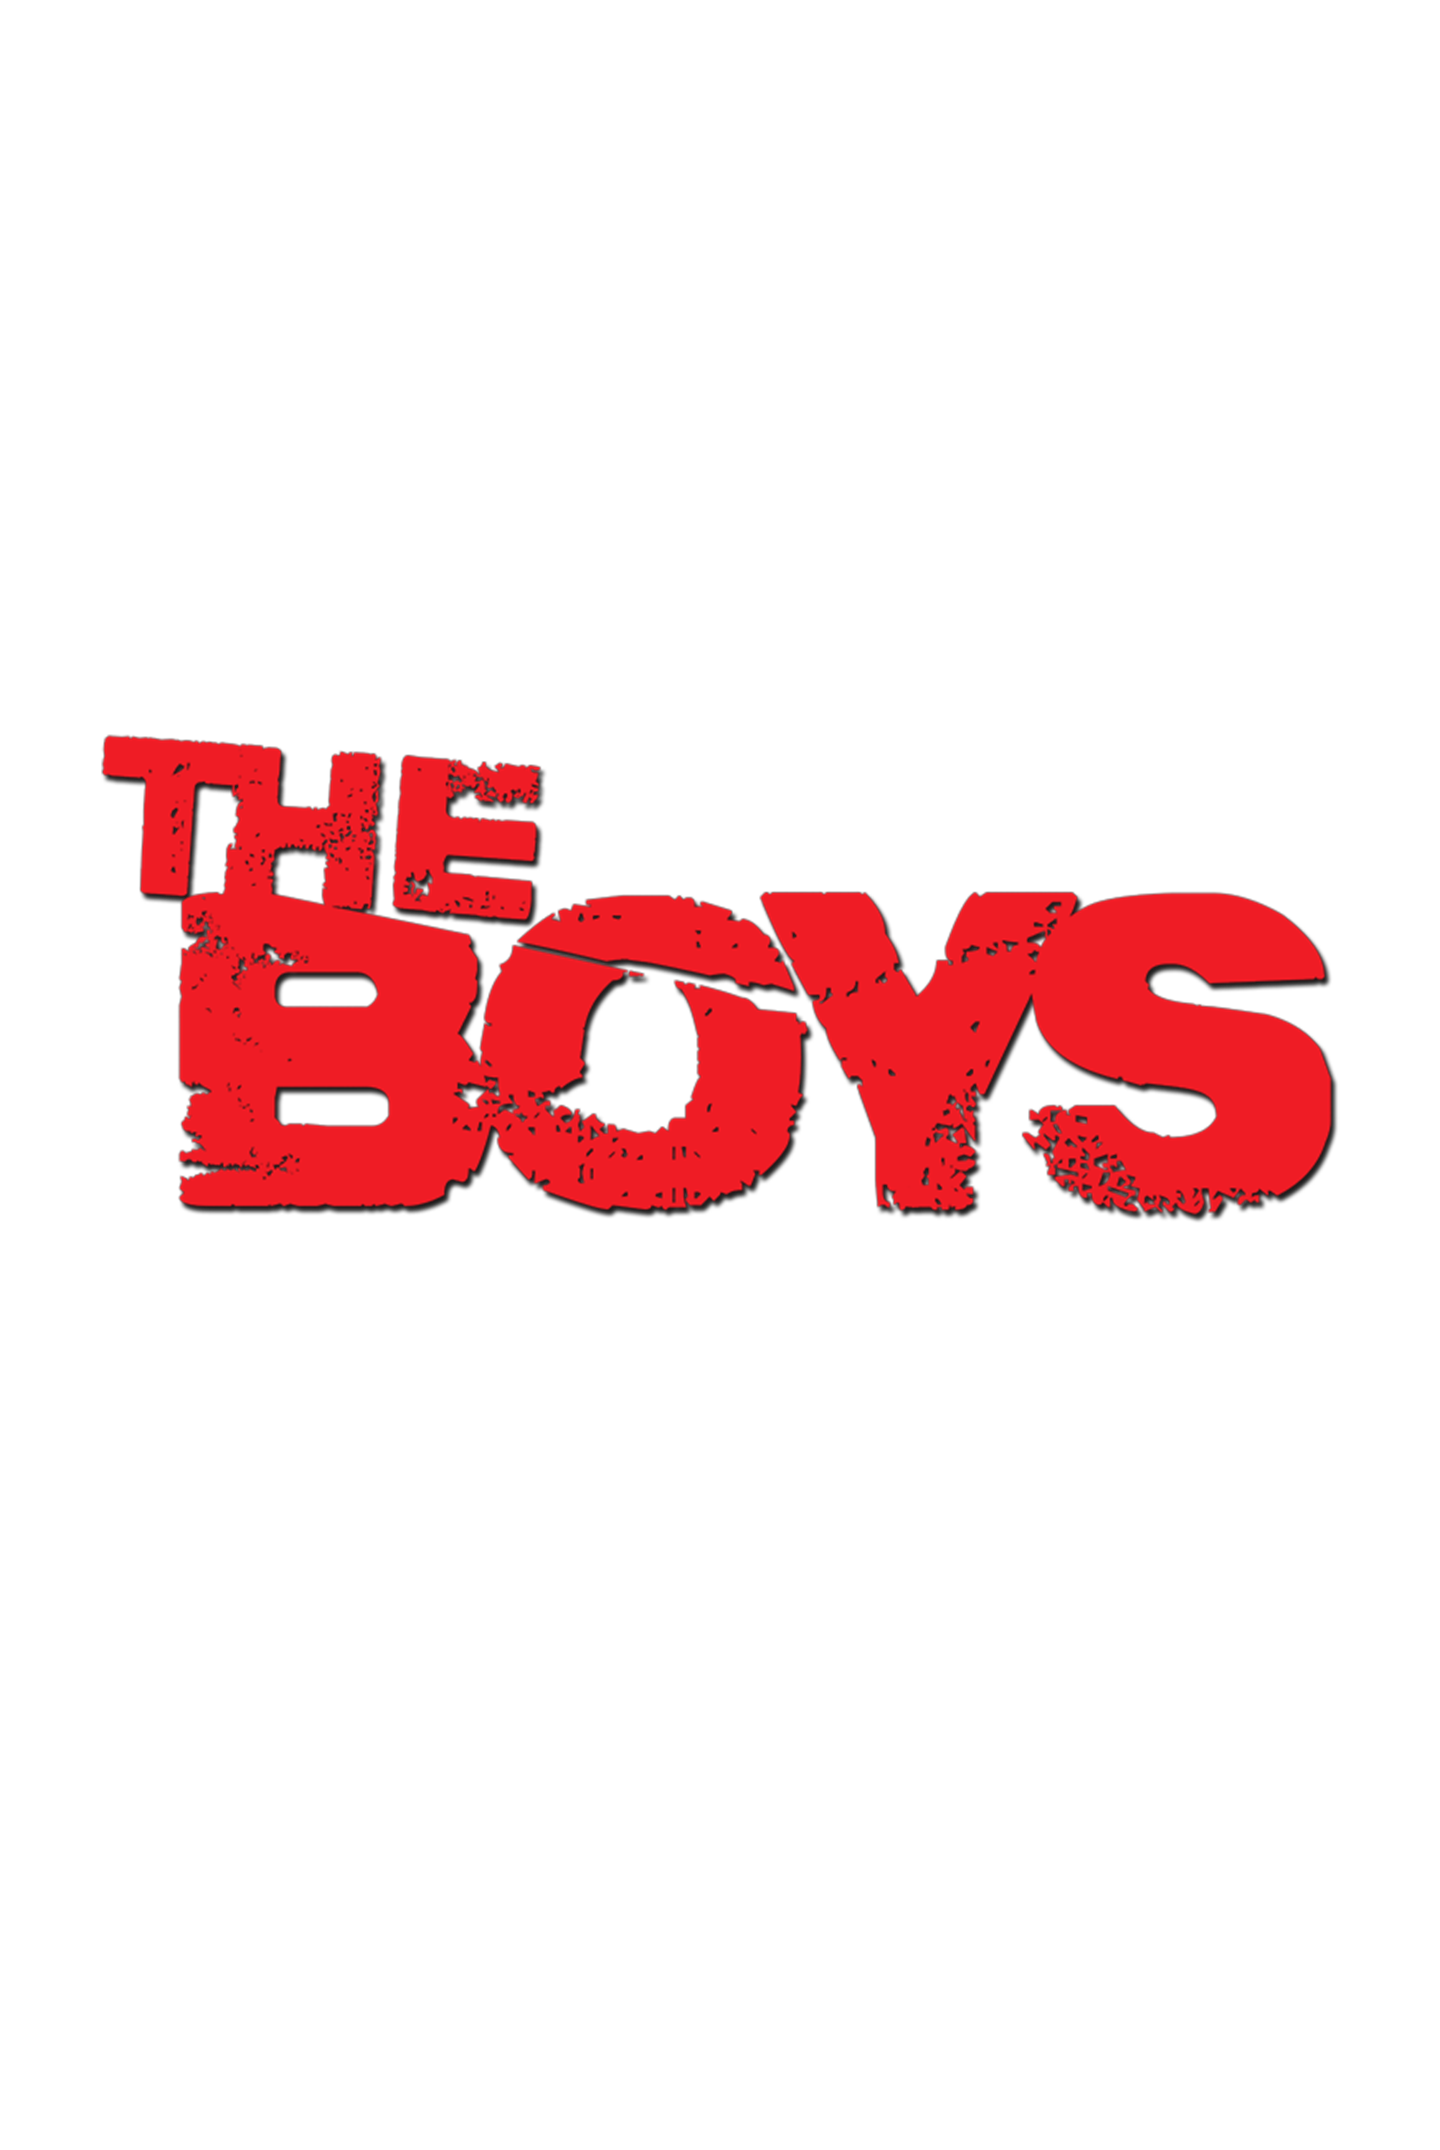 The Boys Logo